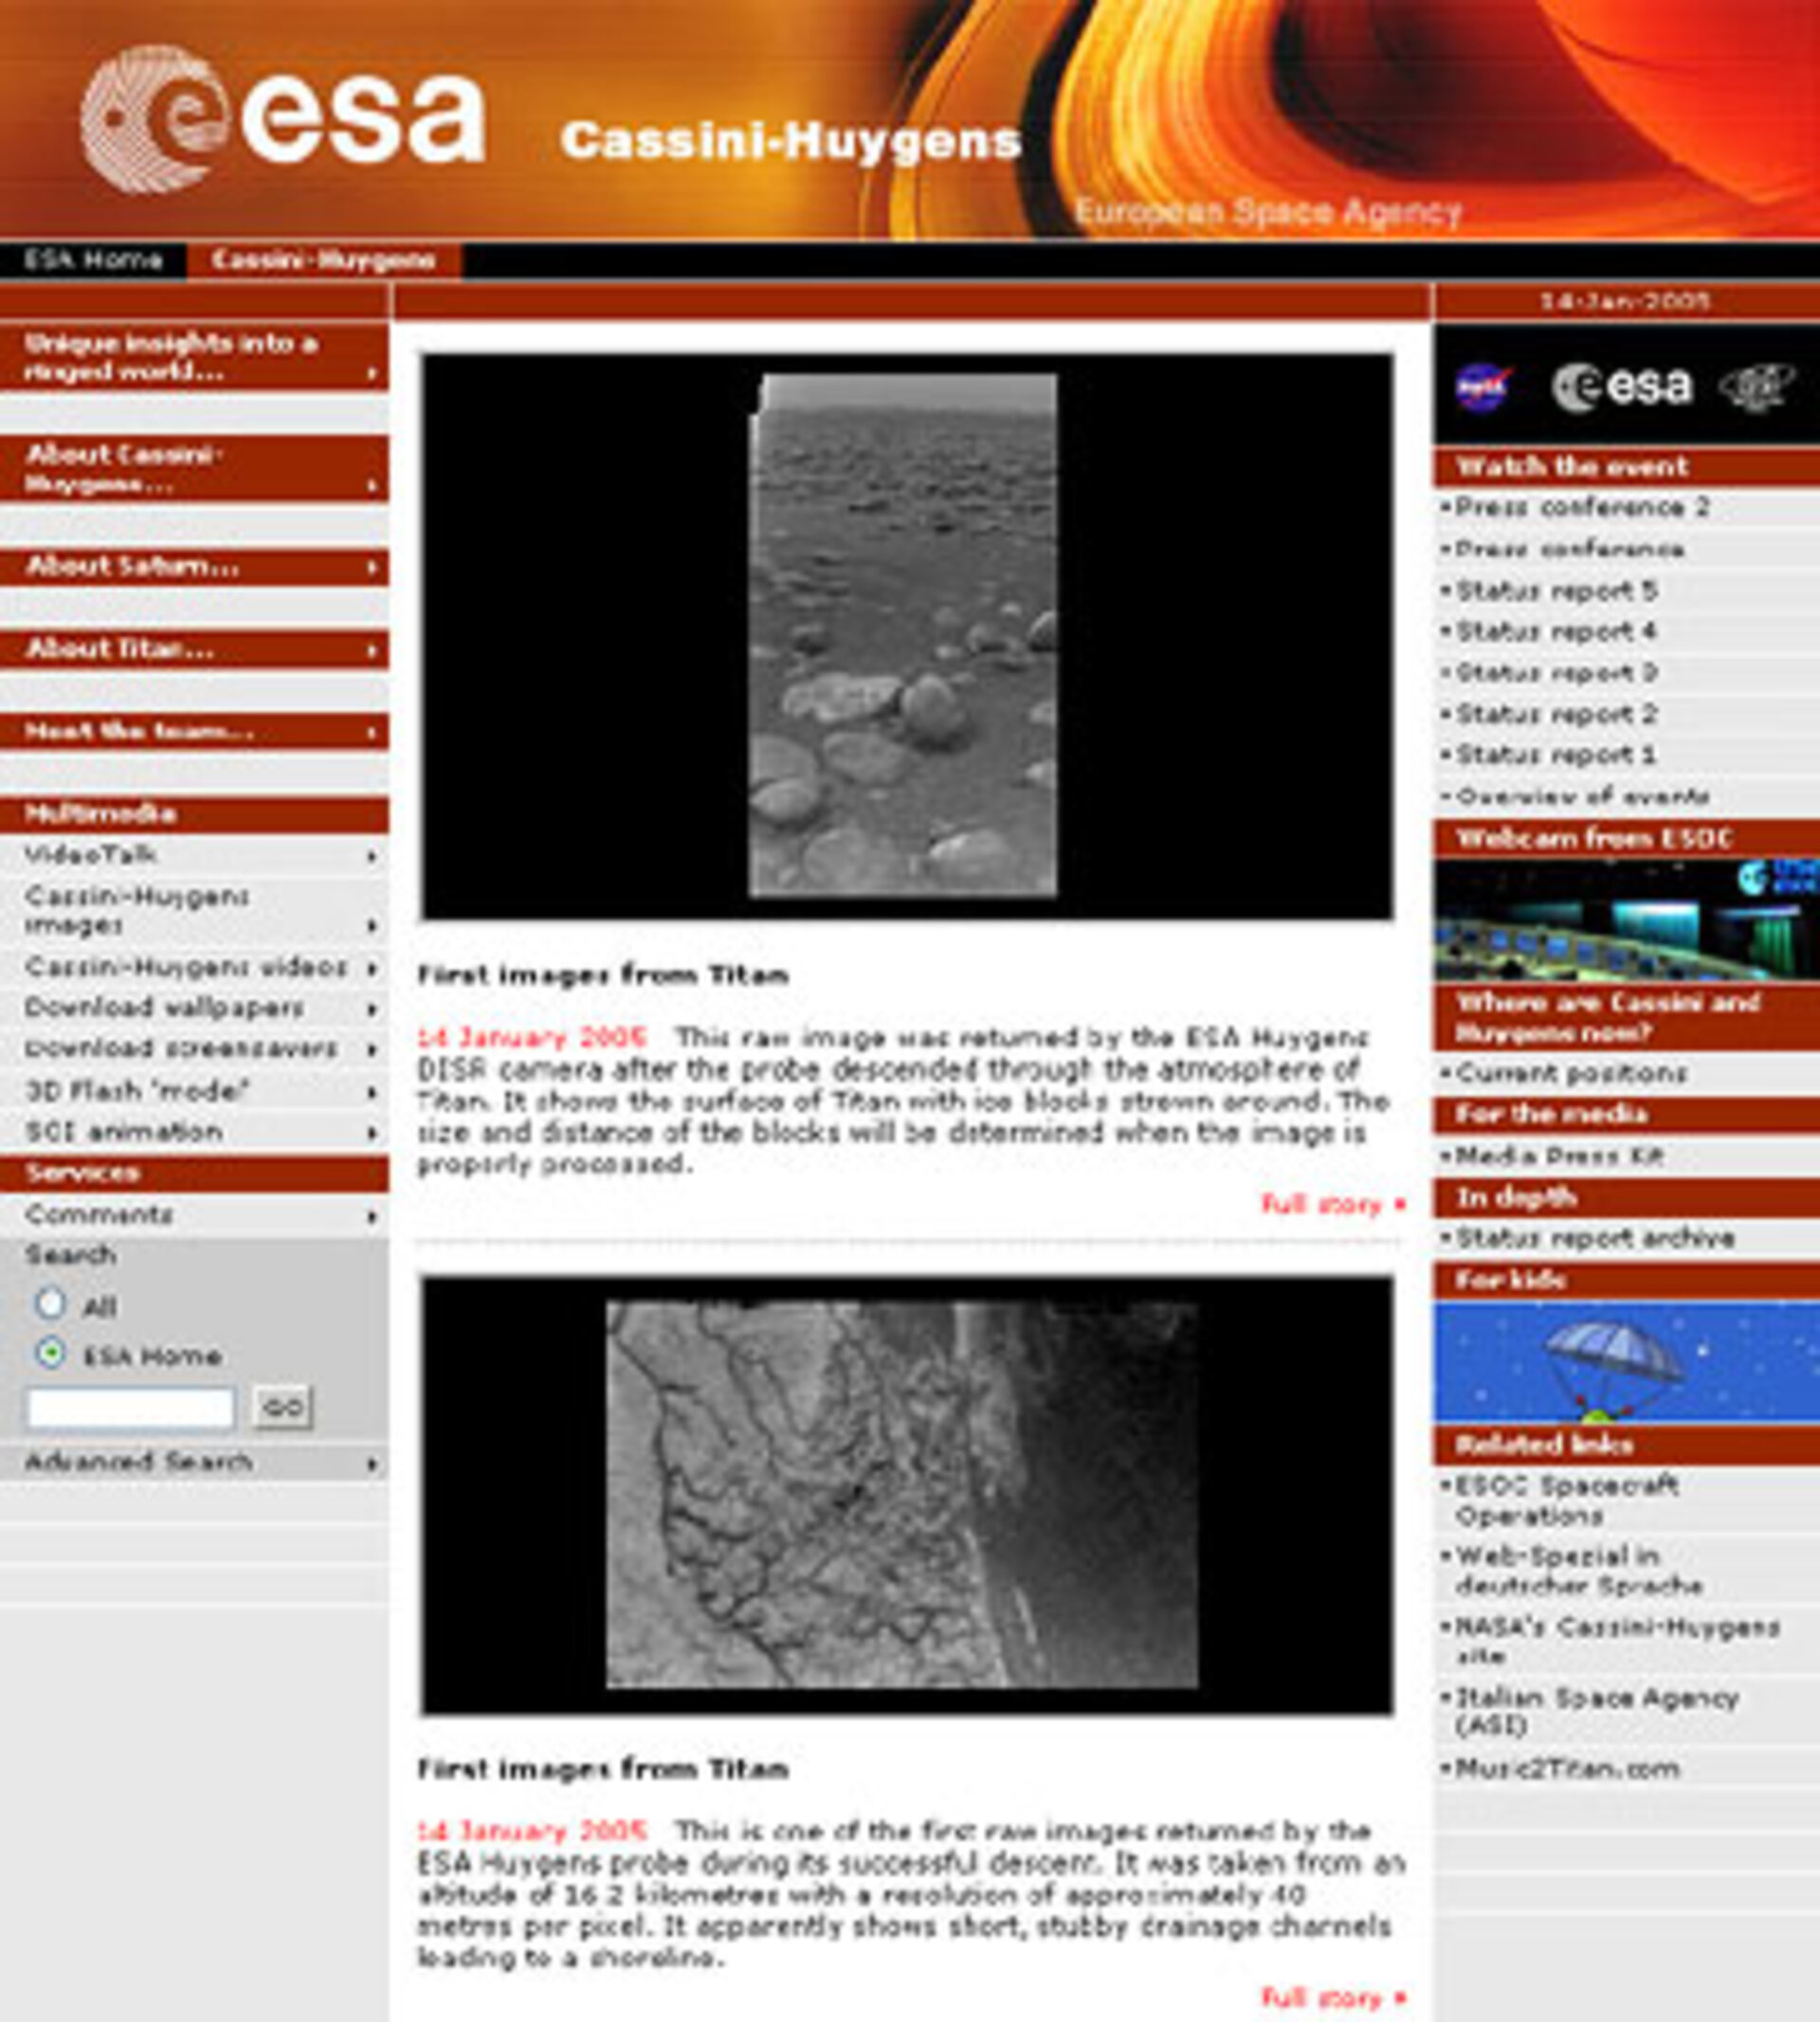 ESA's Cassini-Huygens website on 14 January 2005